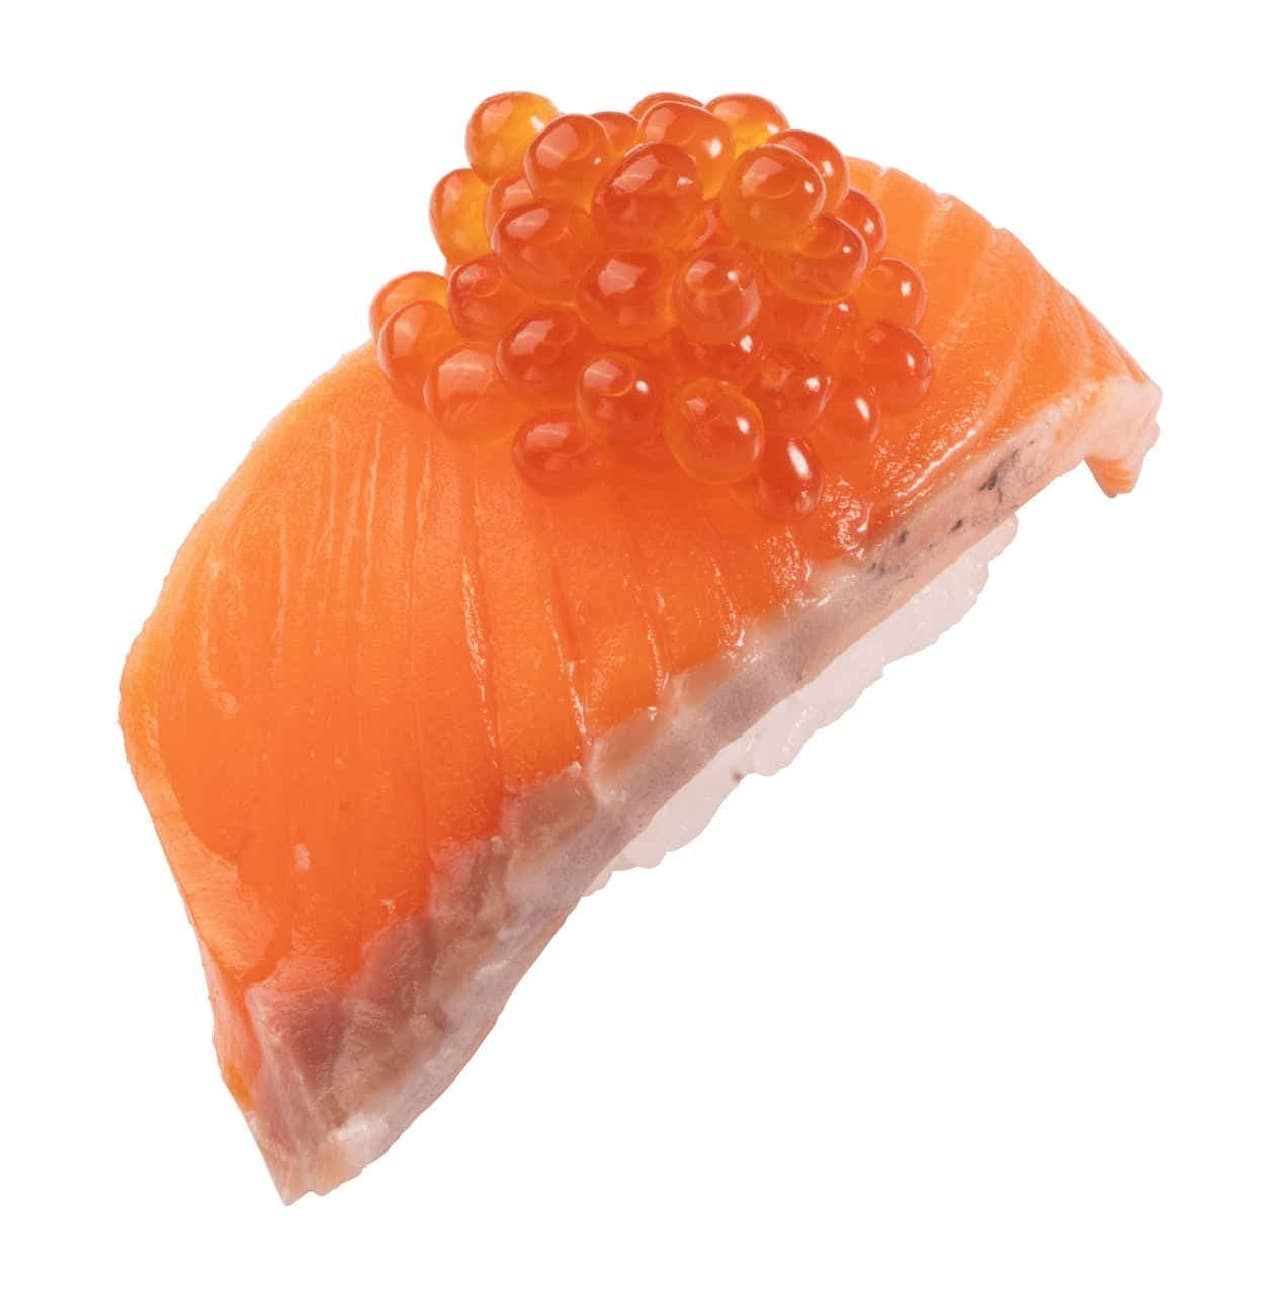 Kappa Sushi "Natural Minami Tuna" and "King Salmon" Fair